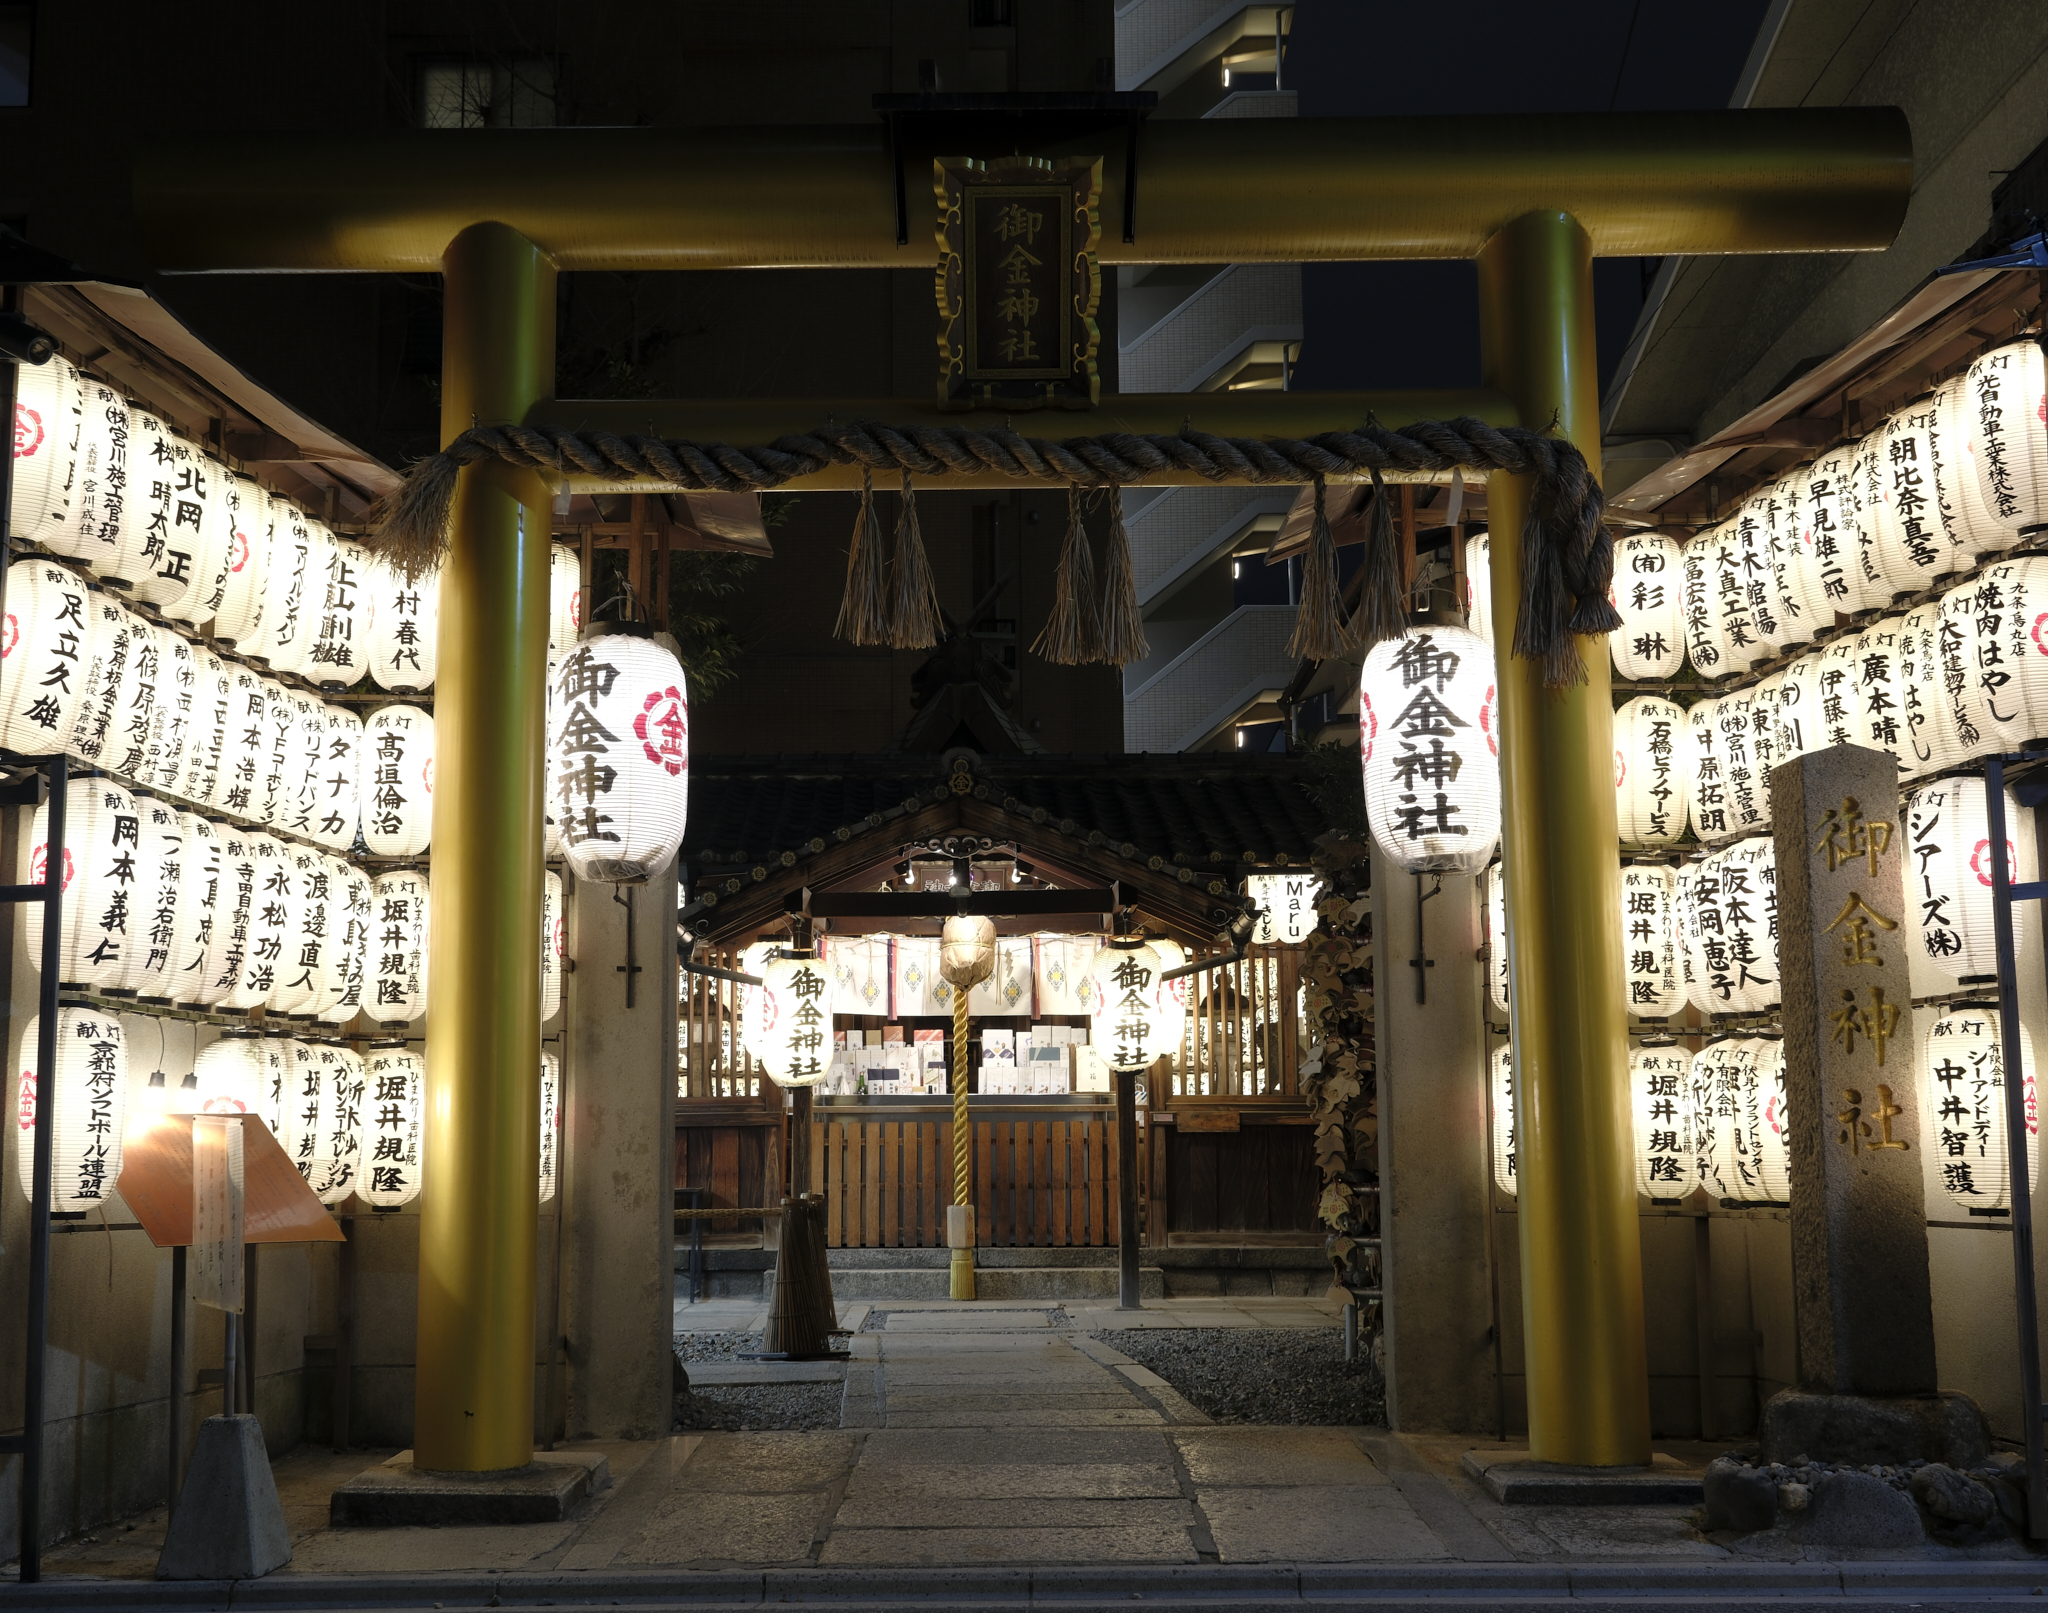 Golden torii gate